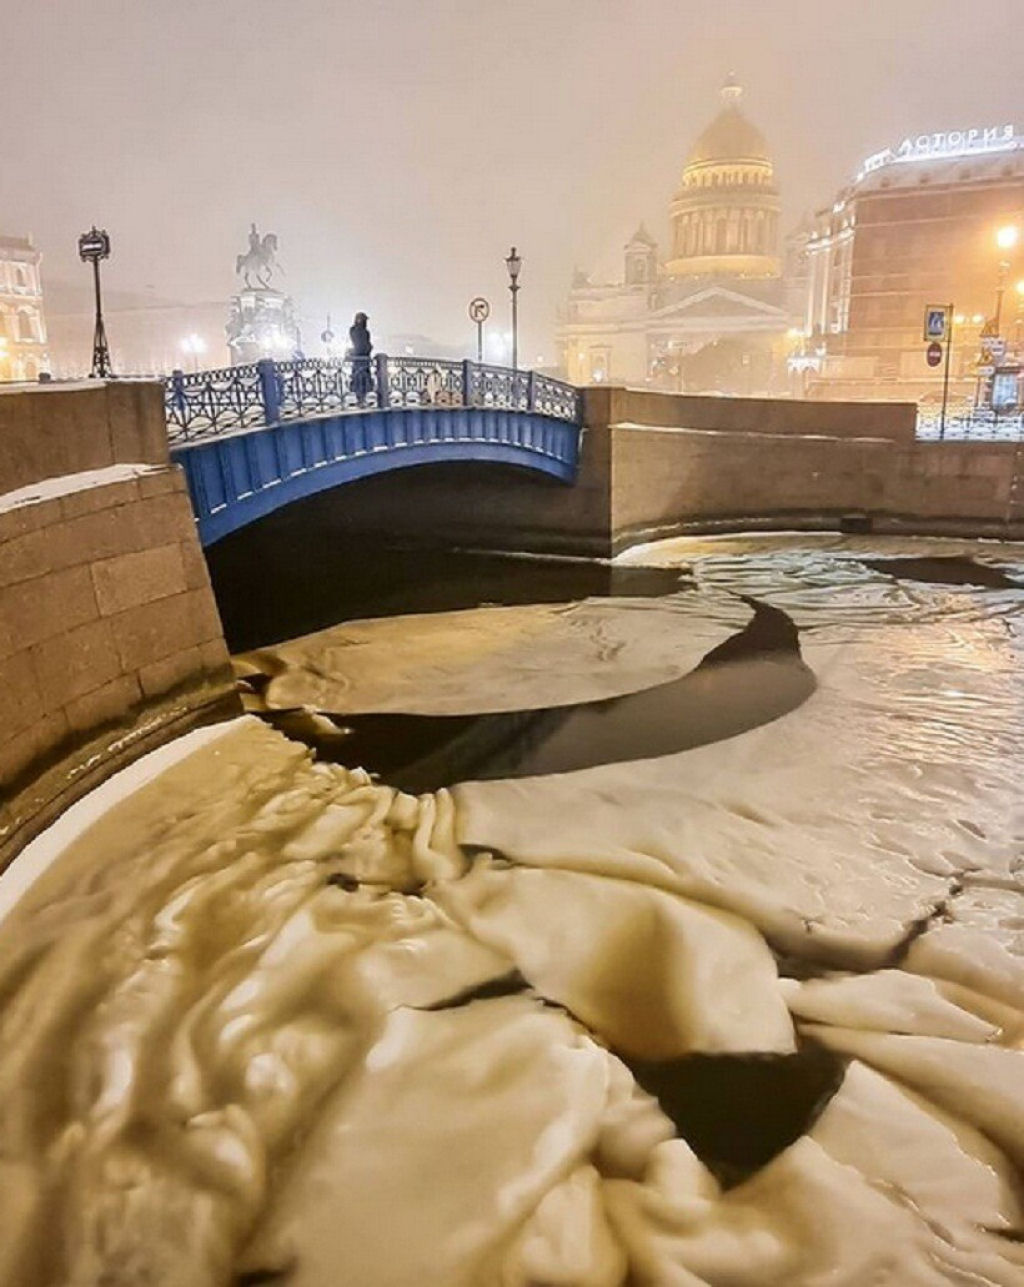 O raro e estranho fenmeno da 'banha-de-gelo' ocorreu em So Petersburgo